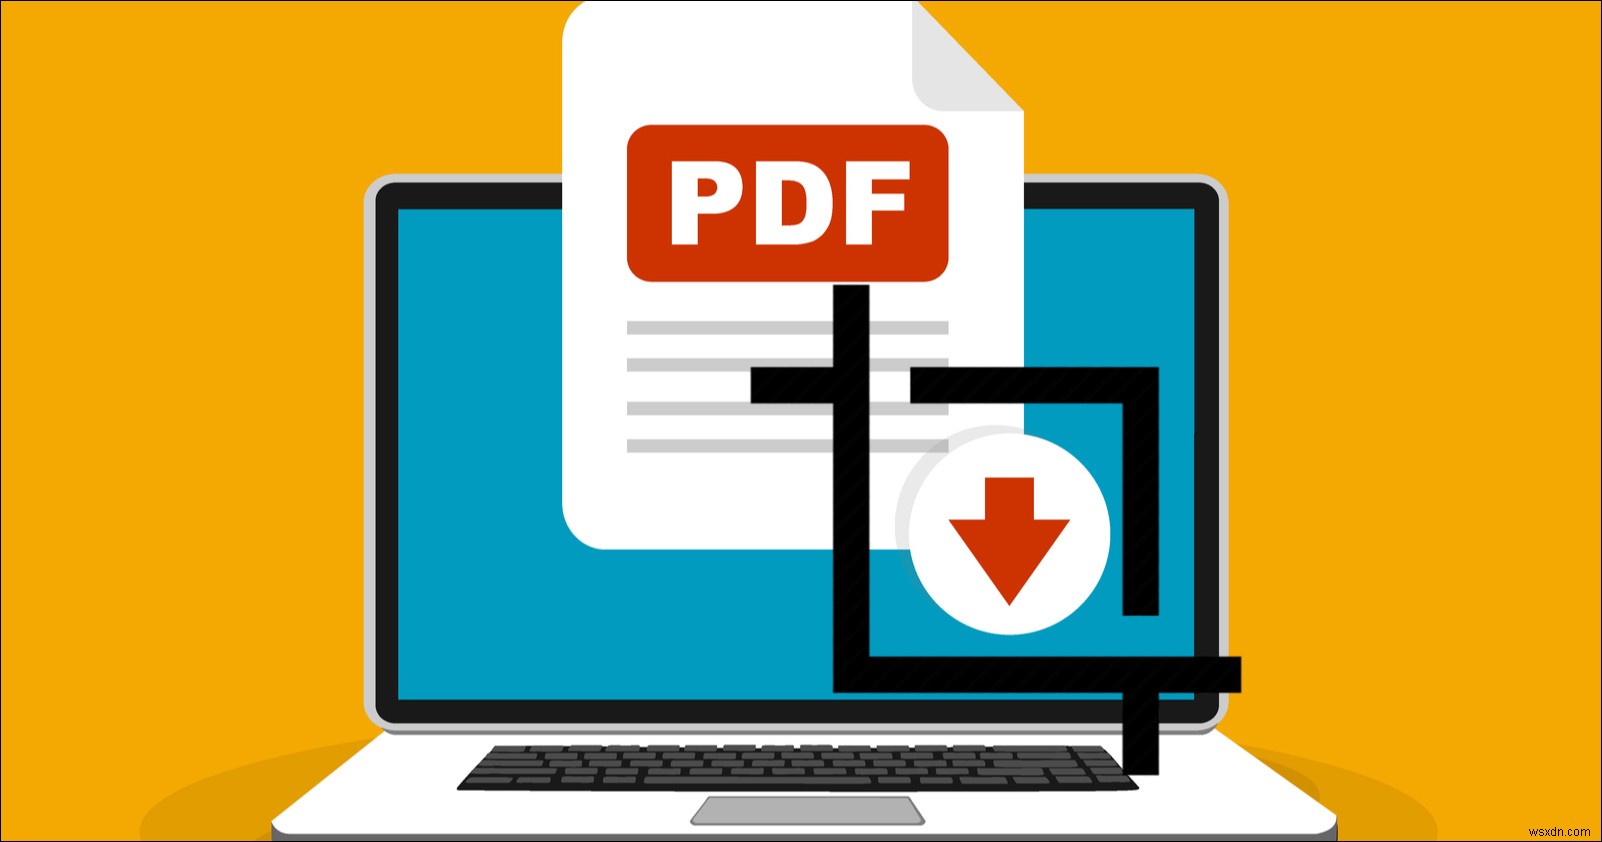 วิธีครอบตัดหรือปรับขนาดหน้า PDF ของคุณอย่างง่ายดาย 